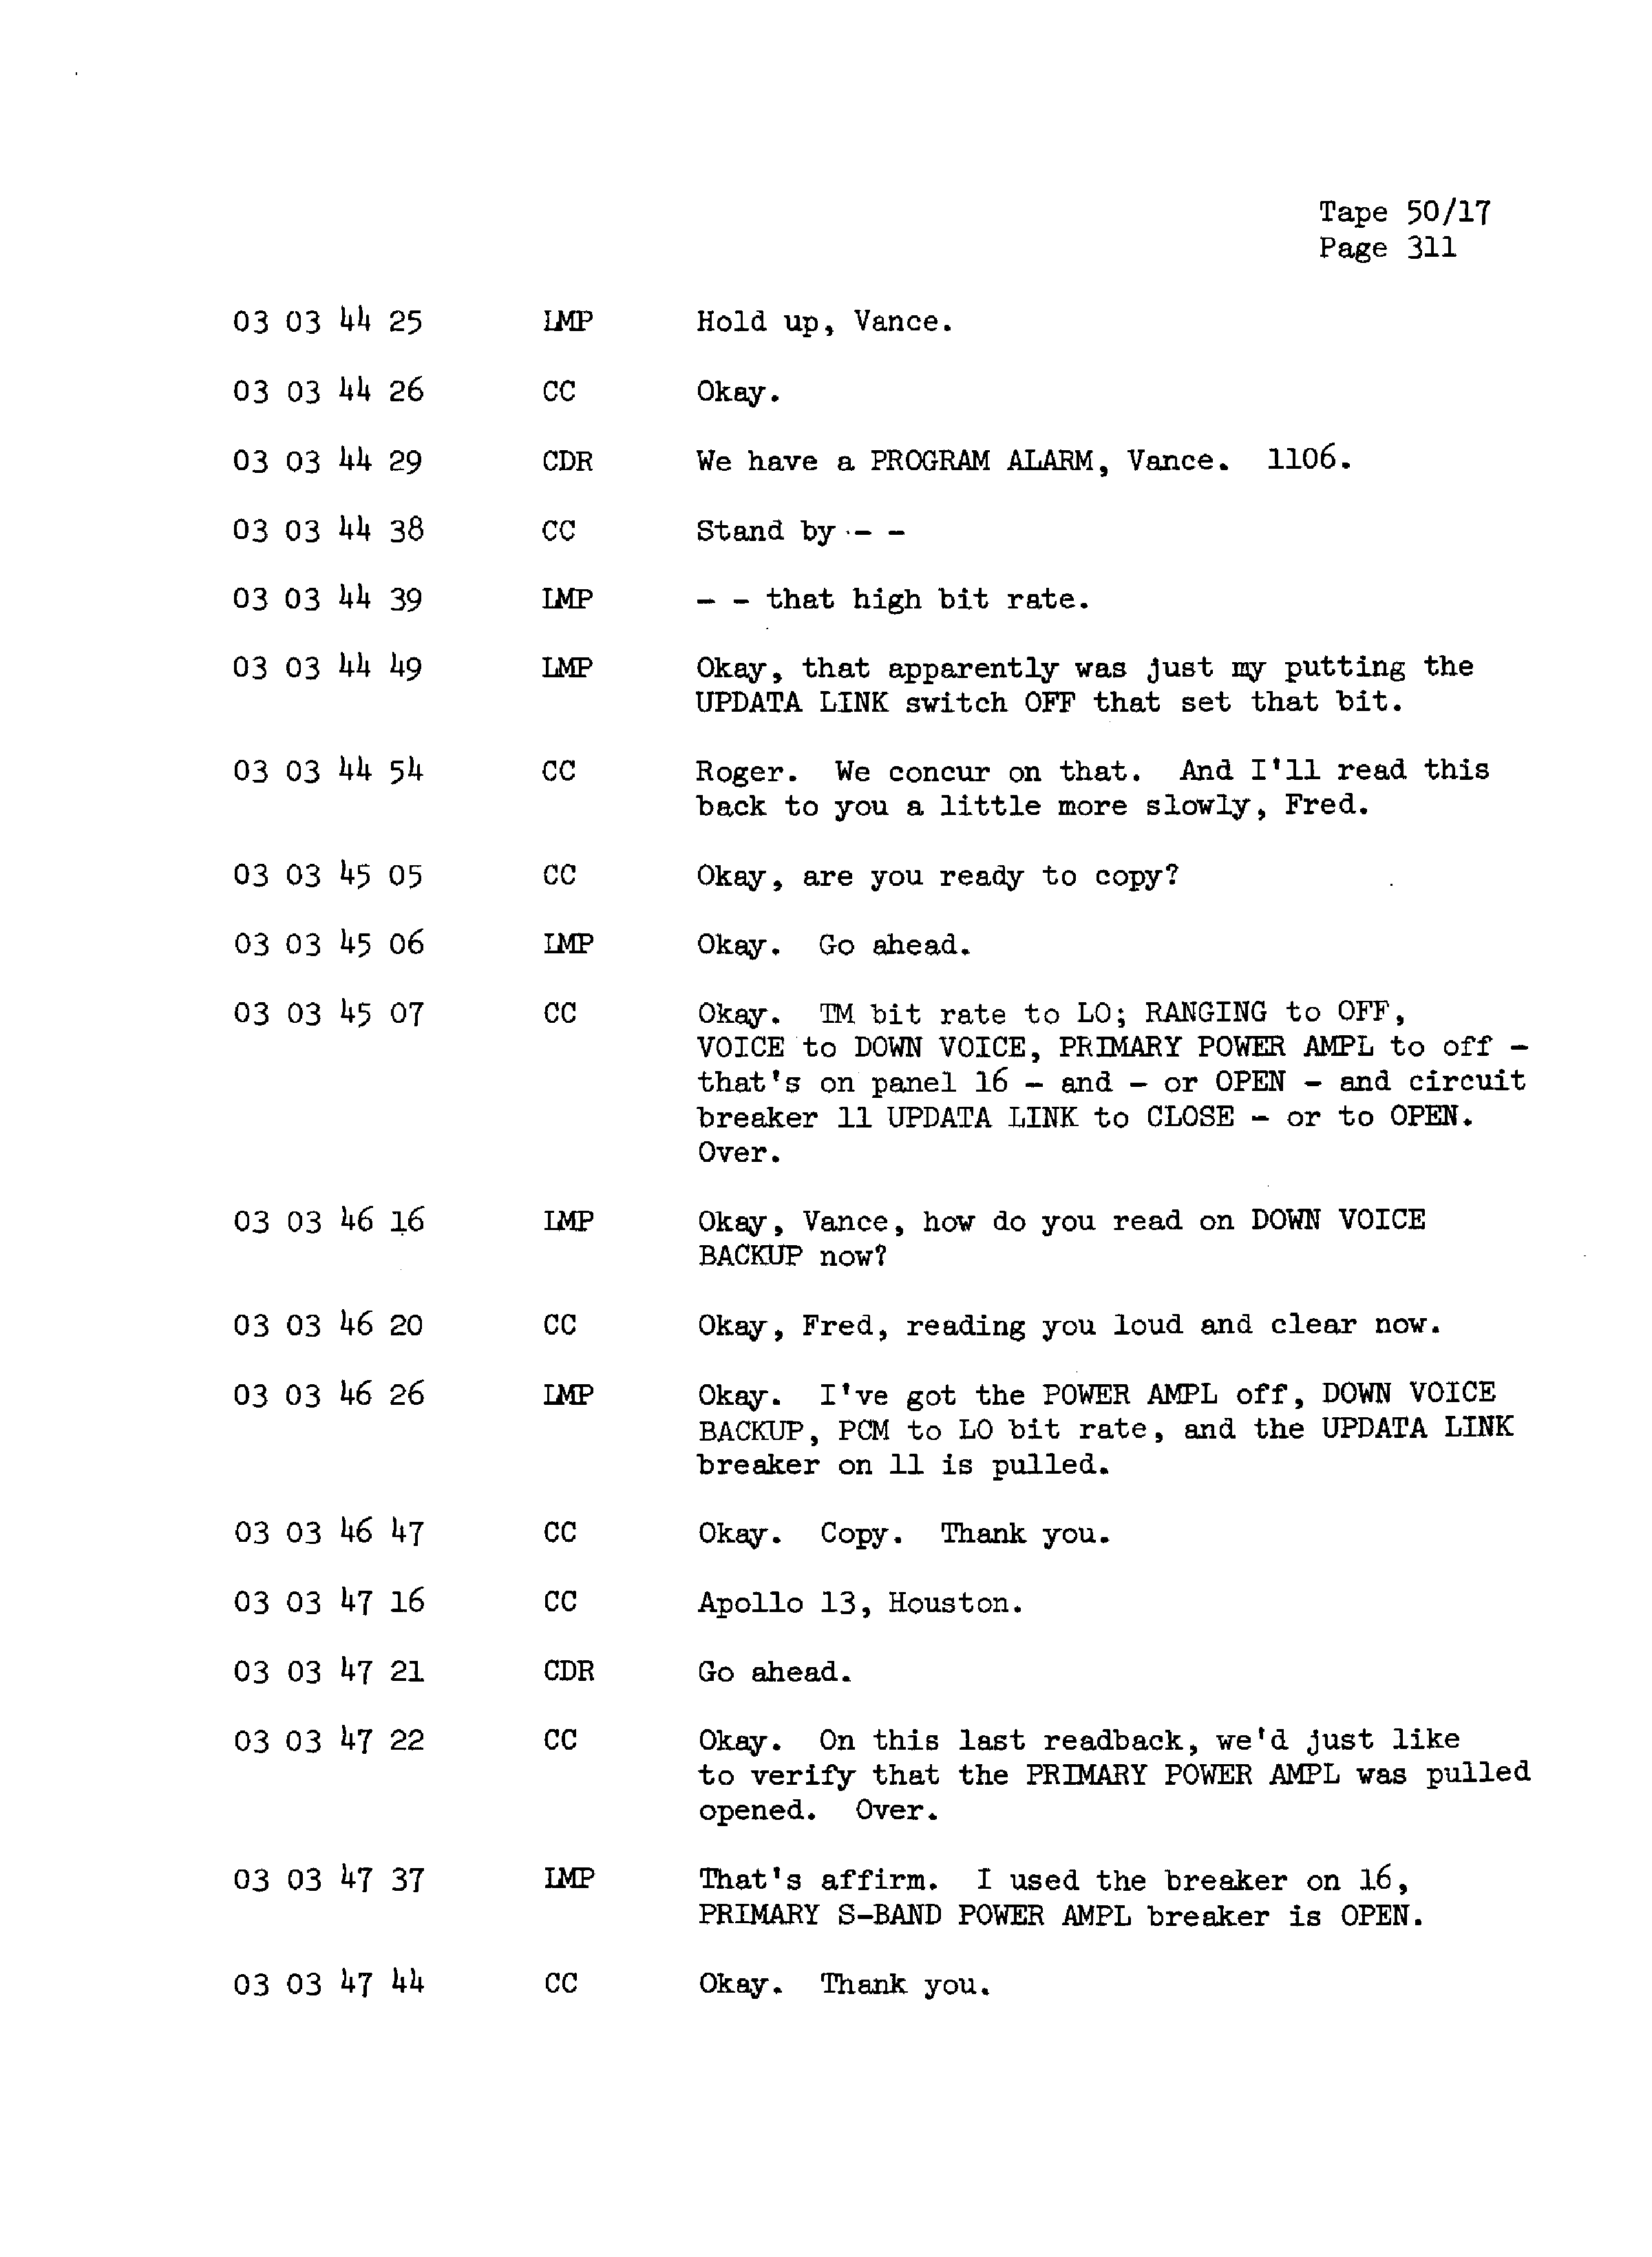 Page 318 of Apollo 13’s original transcript